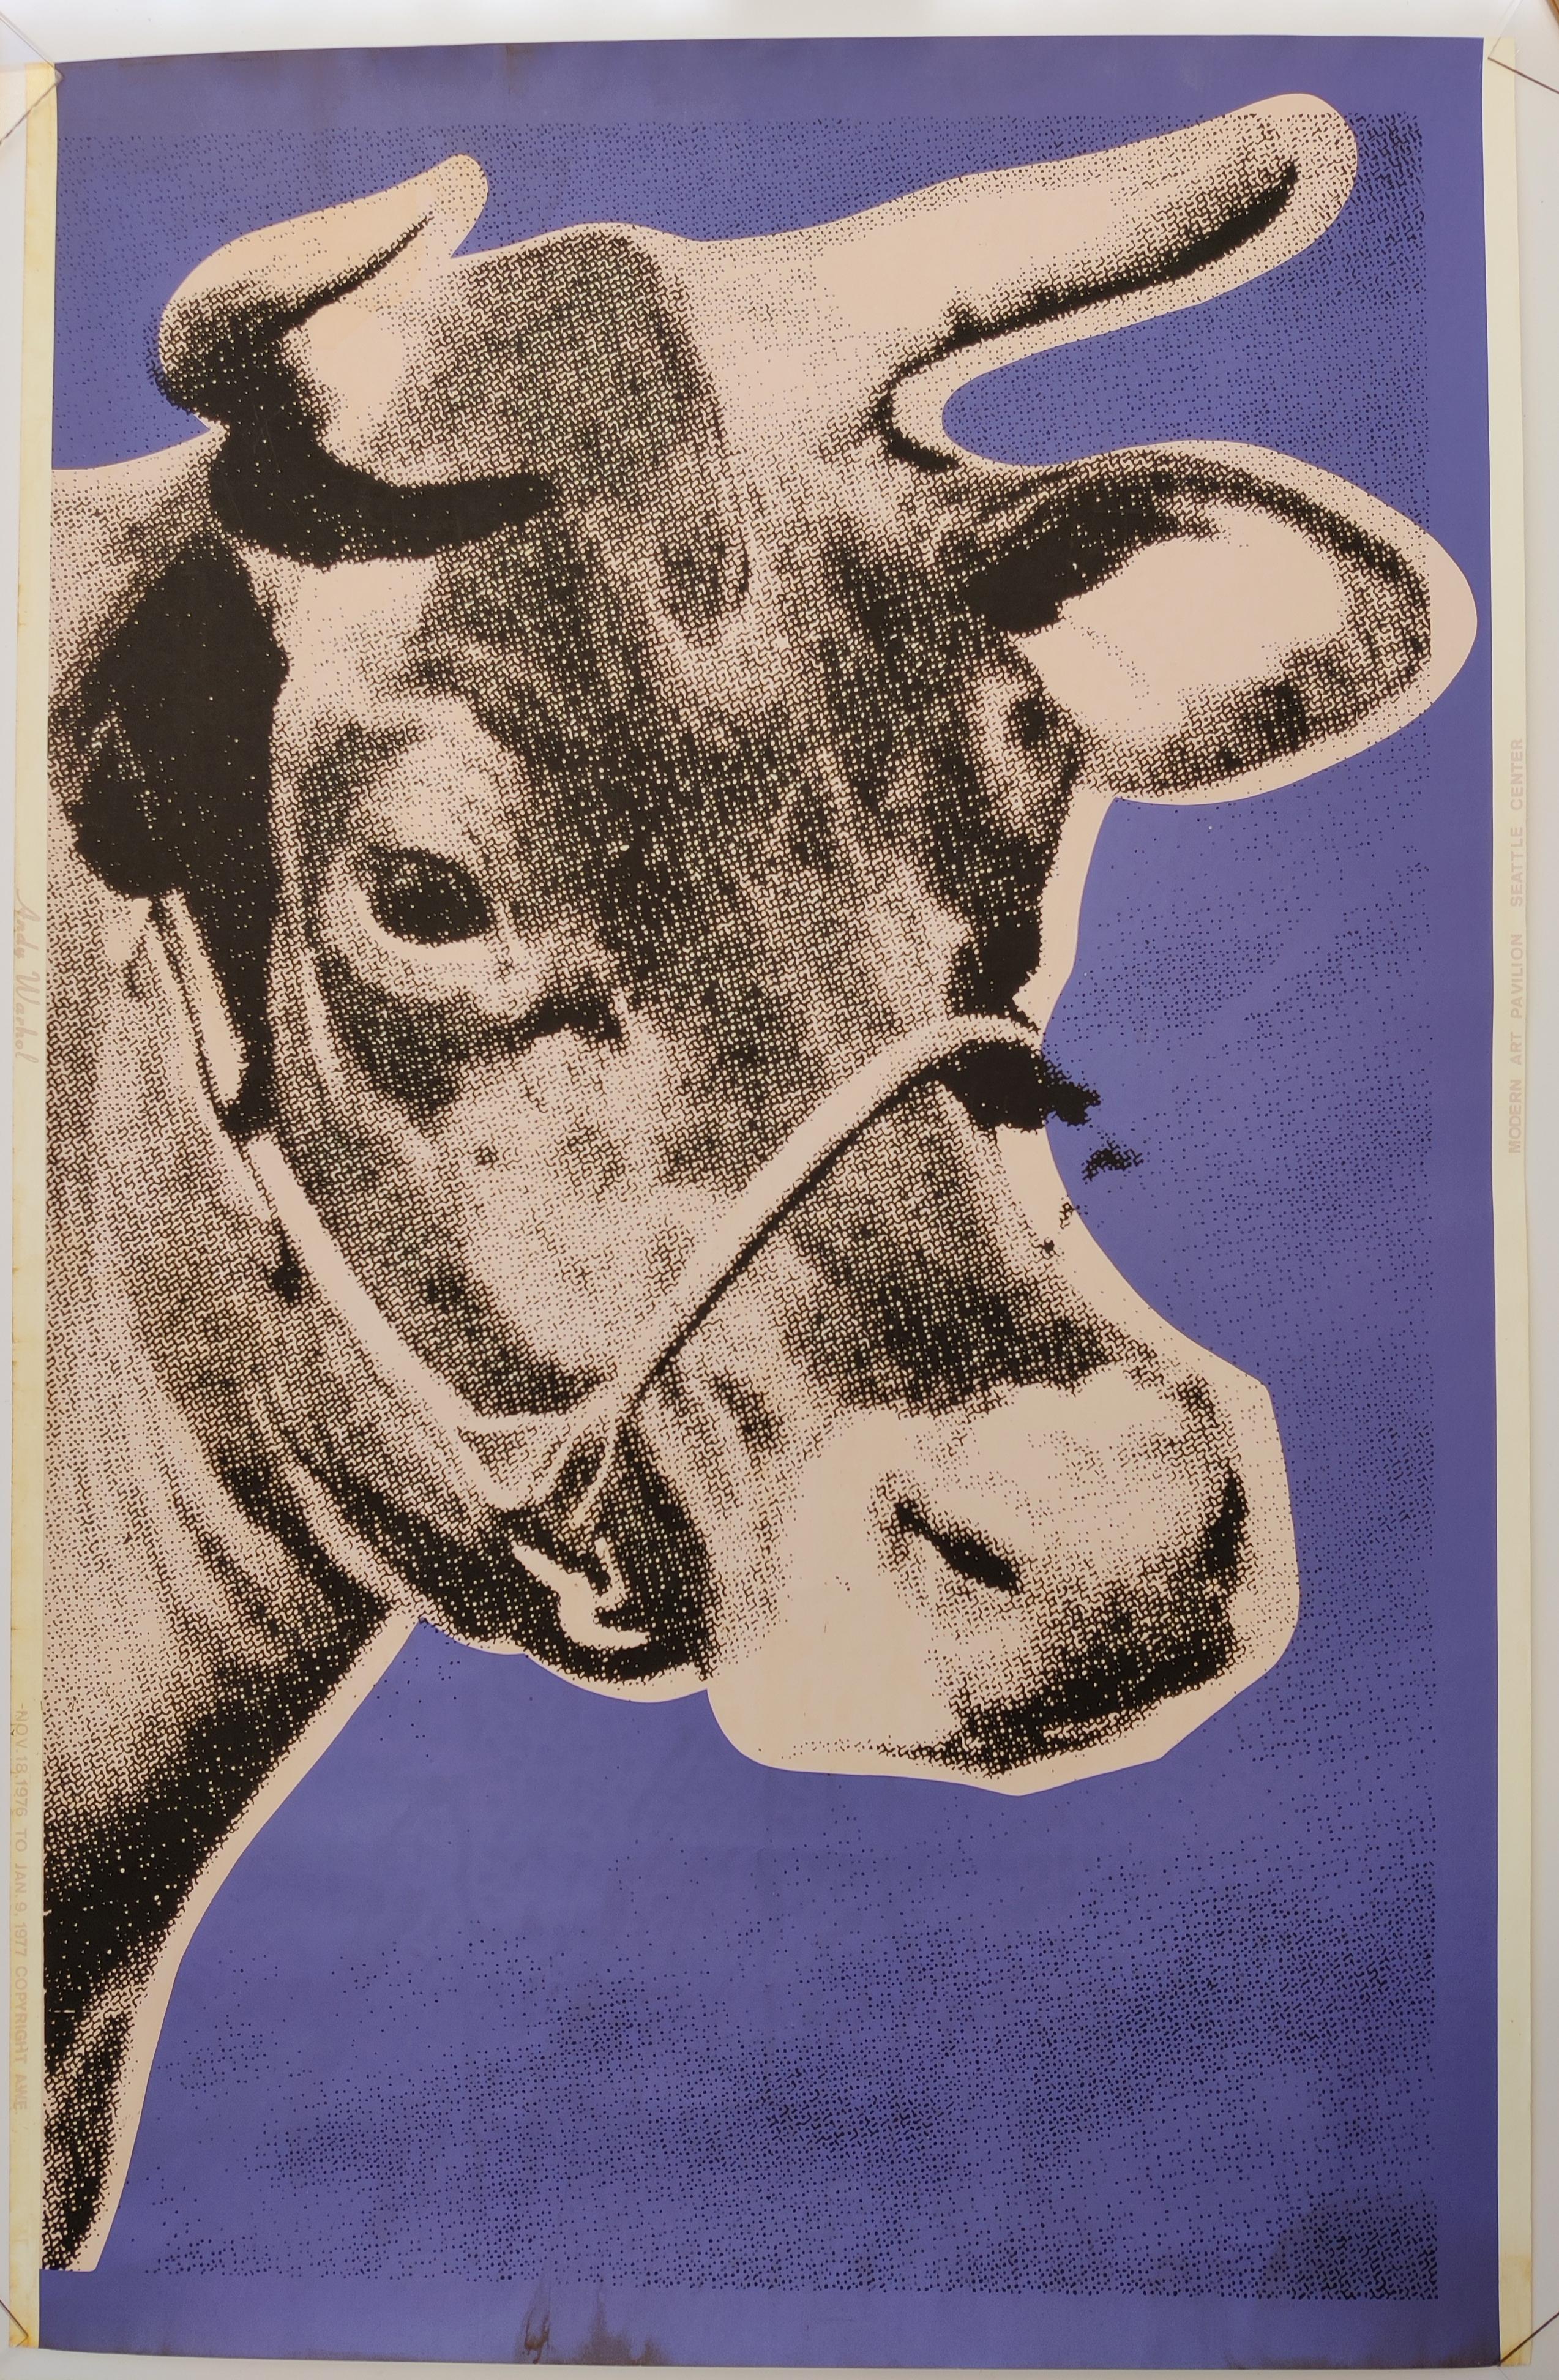 Andy Warhol 
Kuh , 1971
Siebdruck auf Tapete, unsigniert
Kuh mit zartrosa Hintergrund, umgeben von einem violetten Grund. 
Am linken Rand steht in demselben zarten Rosa "Andy Warhol" und etwas weiter unten "NOV. 18, 1976 TO JAN. 9, 1977 COPYRIGHT